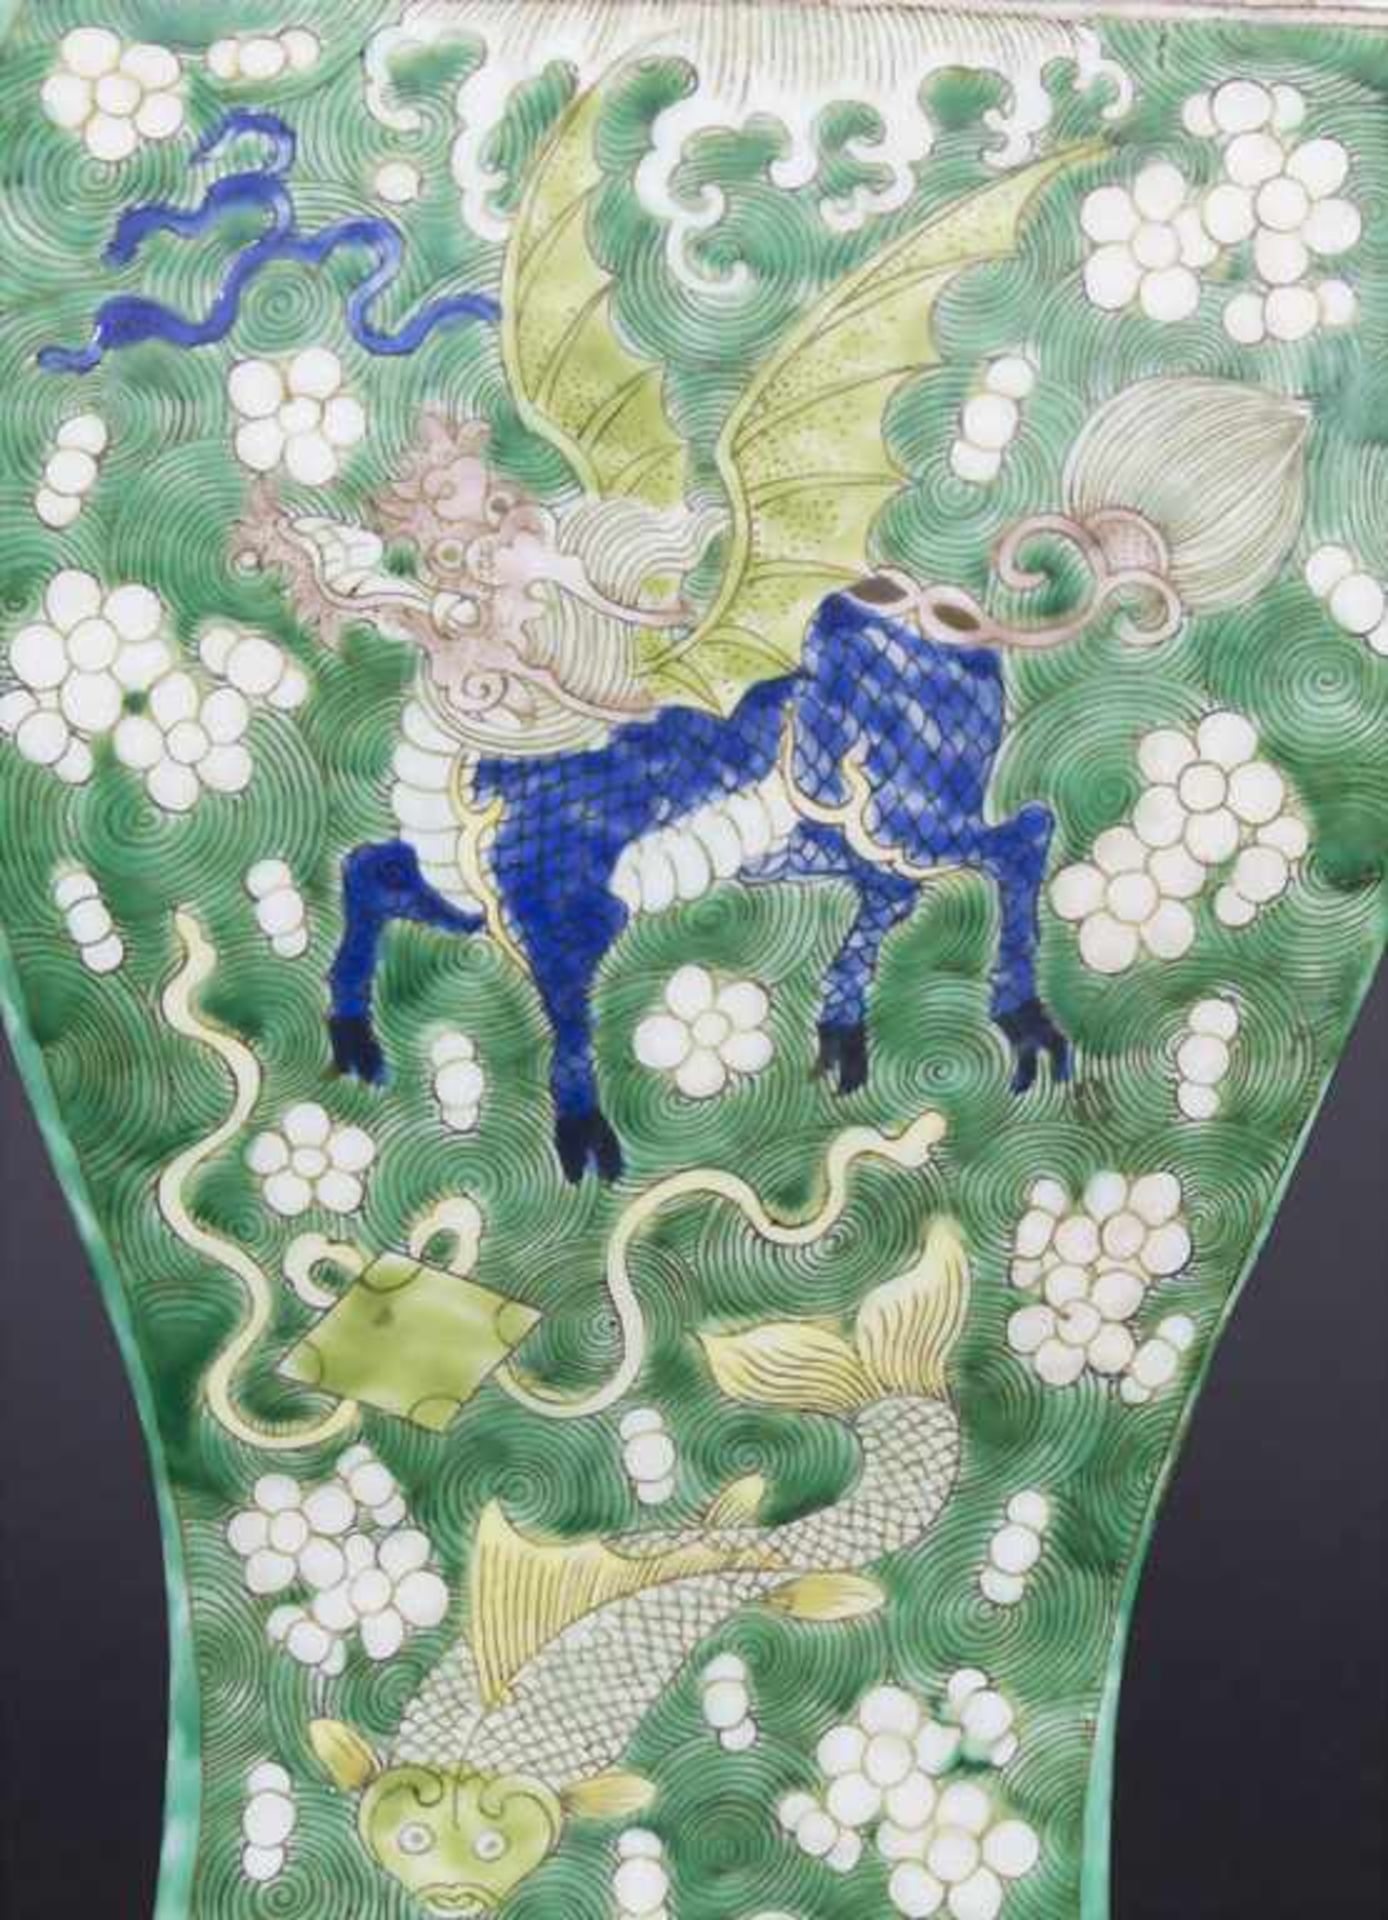 Ziervase, China, späte Qing-Dynastie, 19./20. Jh.Material: Porzellan, polychrom bemalt,Marke/ - Bild 3 aus 17